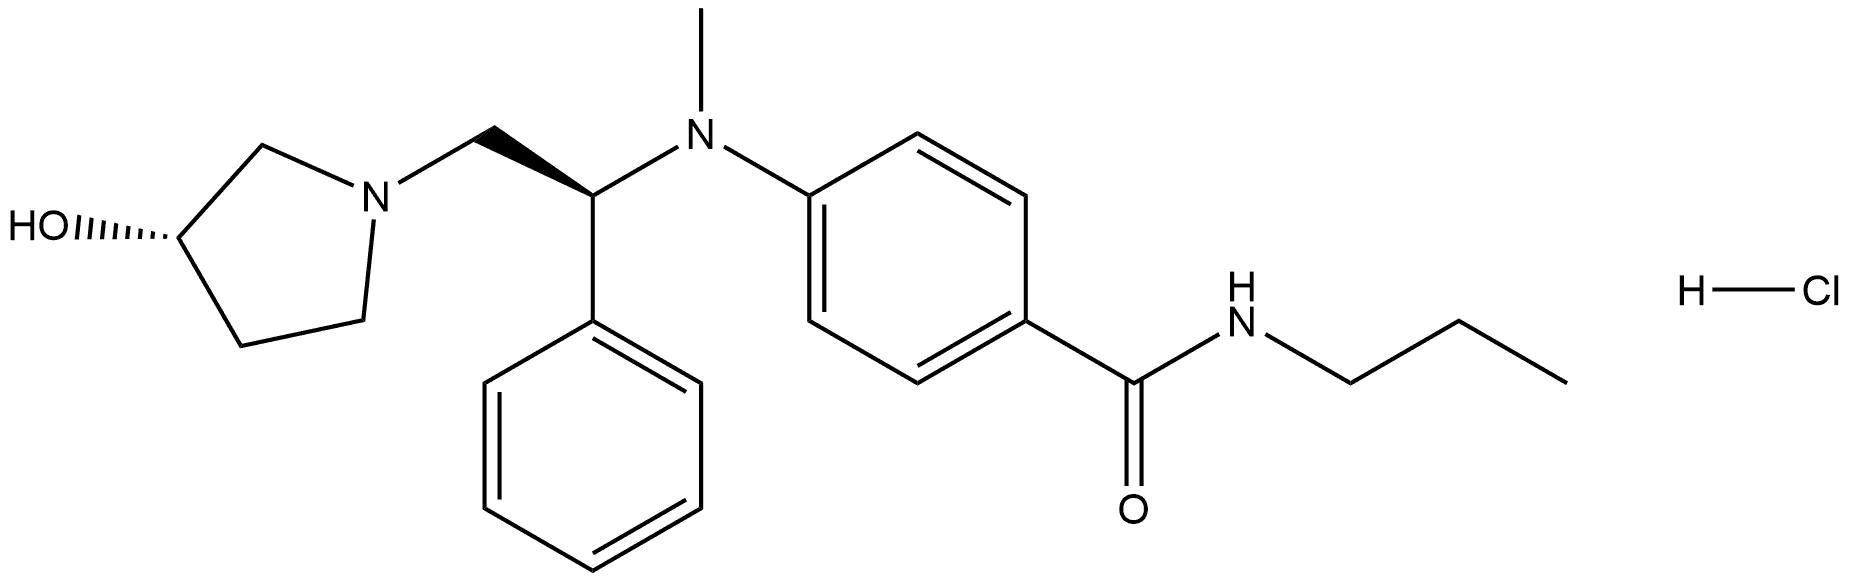 204970-99-0 Benzamide, 4-[[(1S)-2-[(3S)-3-hydroxy-1-pyrrolidinyl]-1-phenylethyl]methylamino]-N-propyl-, hydrochloride (1:1)